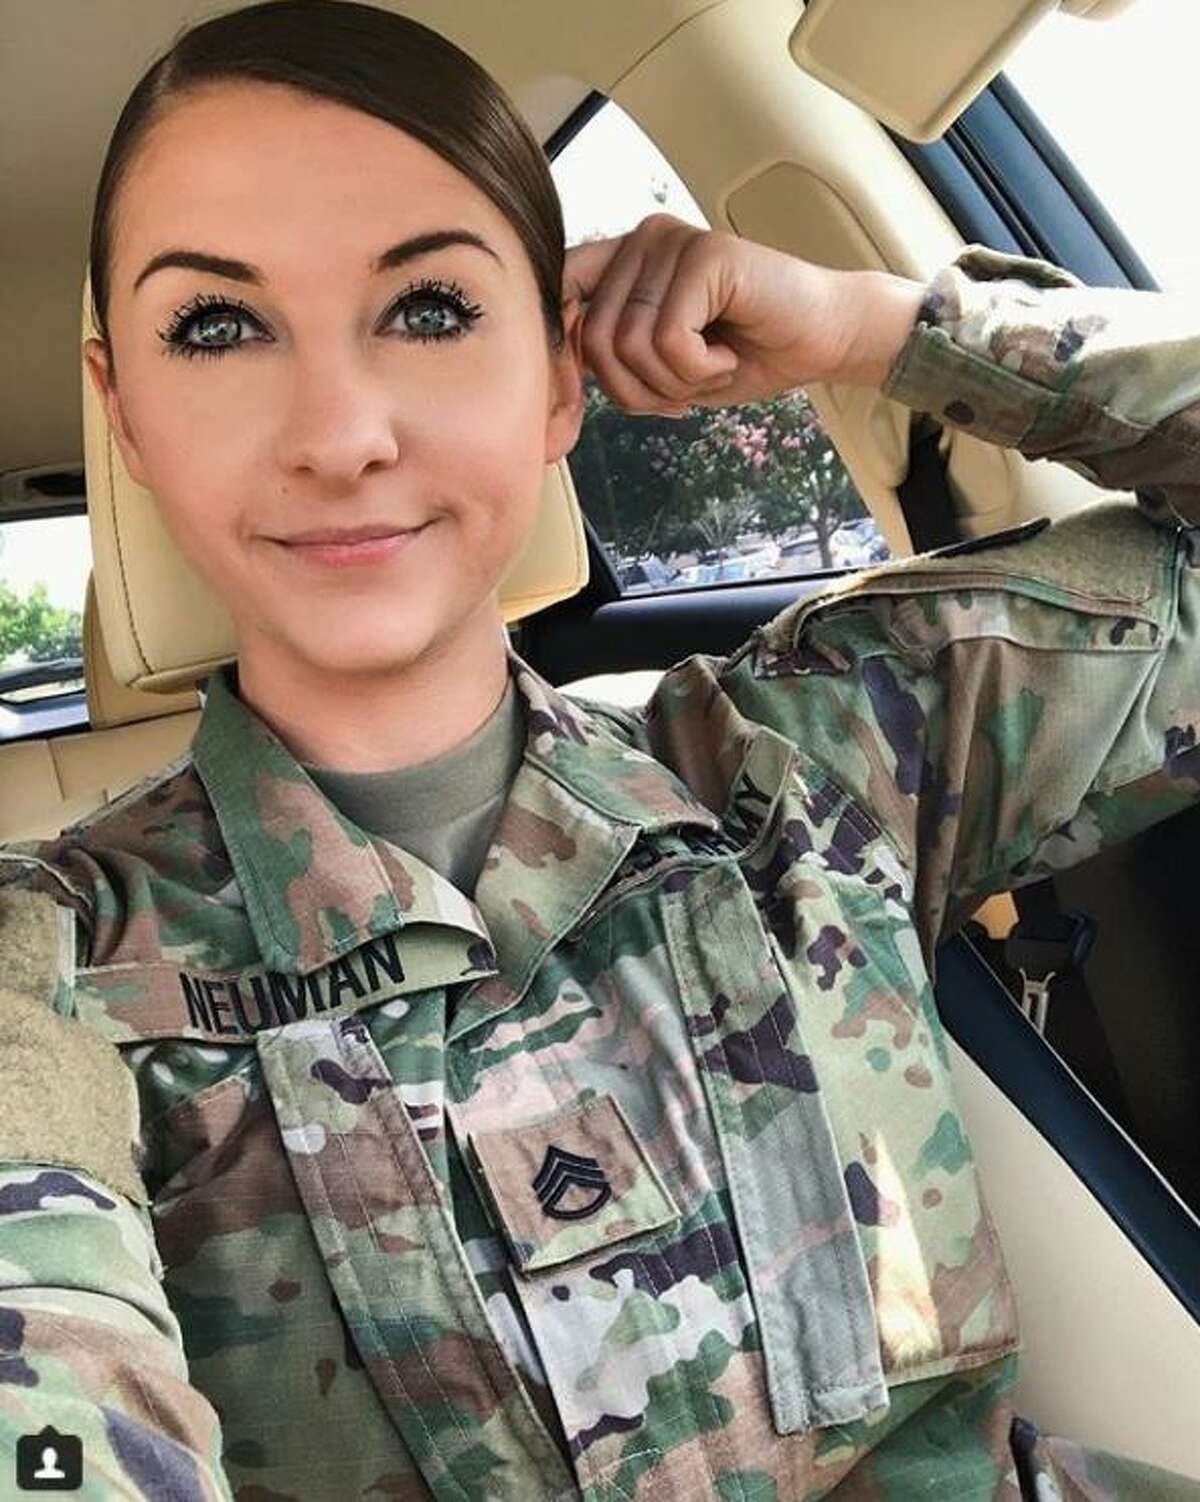 galleries turn view military wife selfie